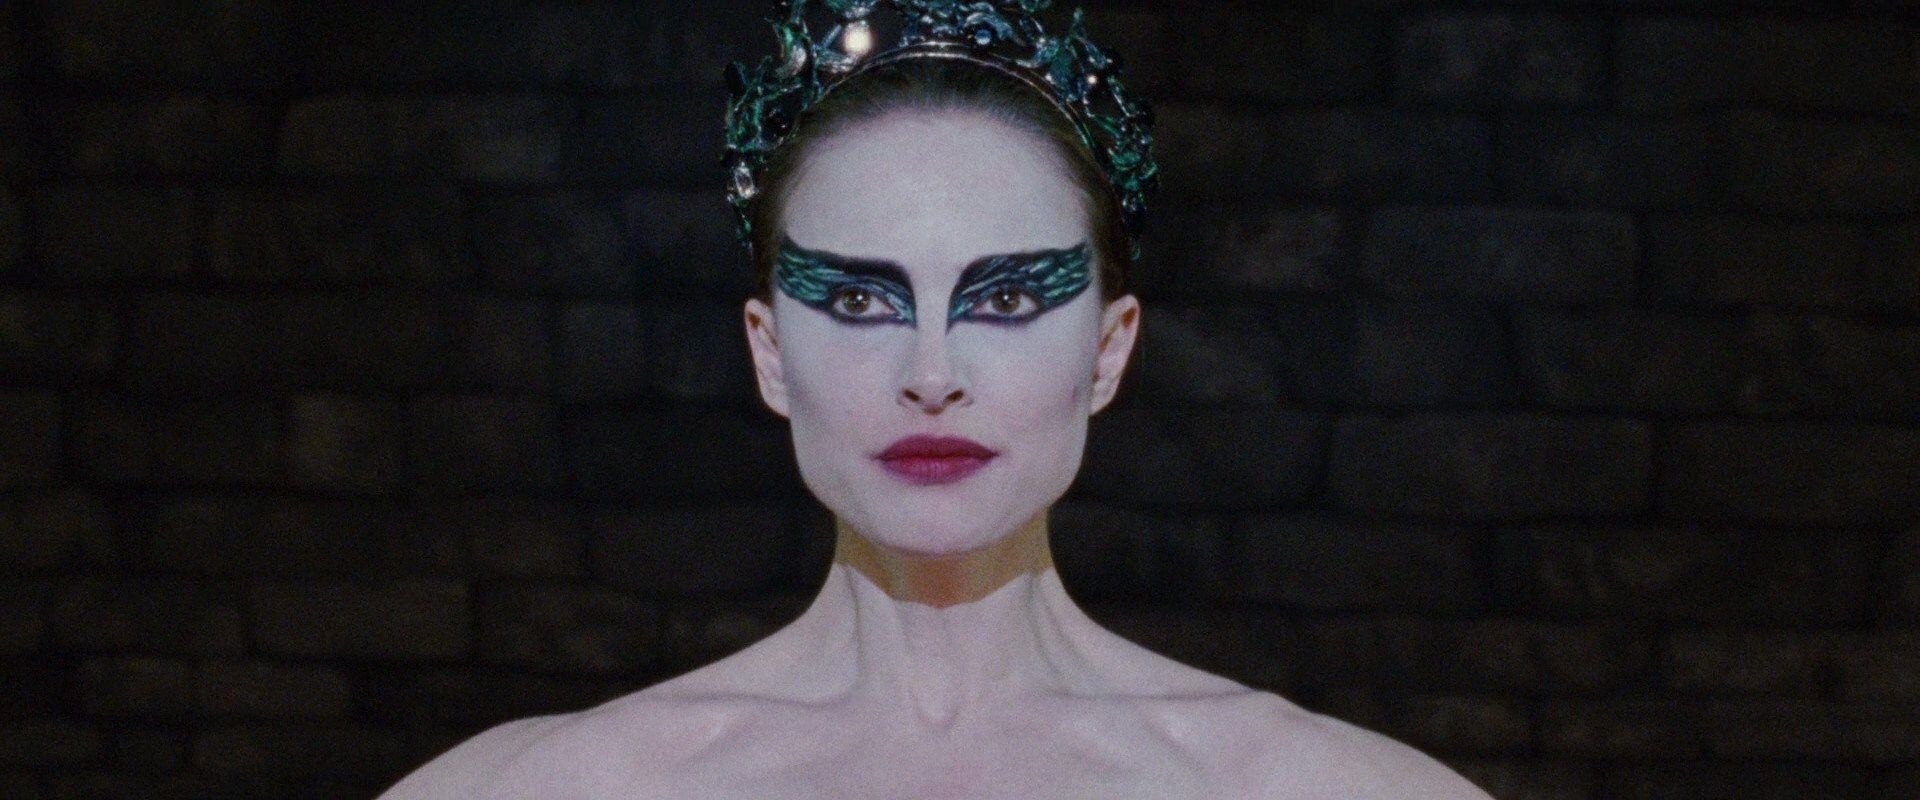 Natalie Portman wearing dance makeup.